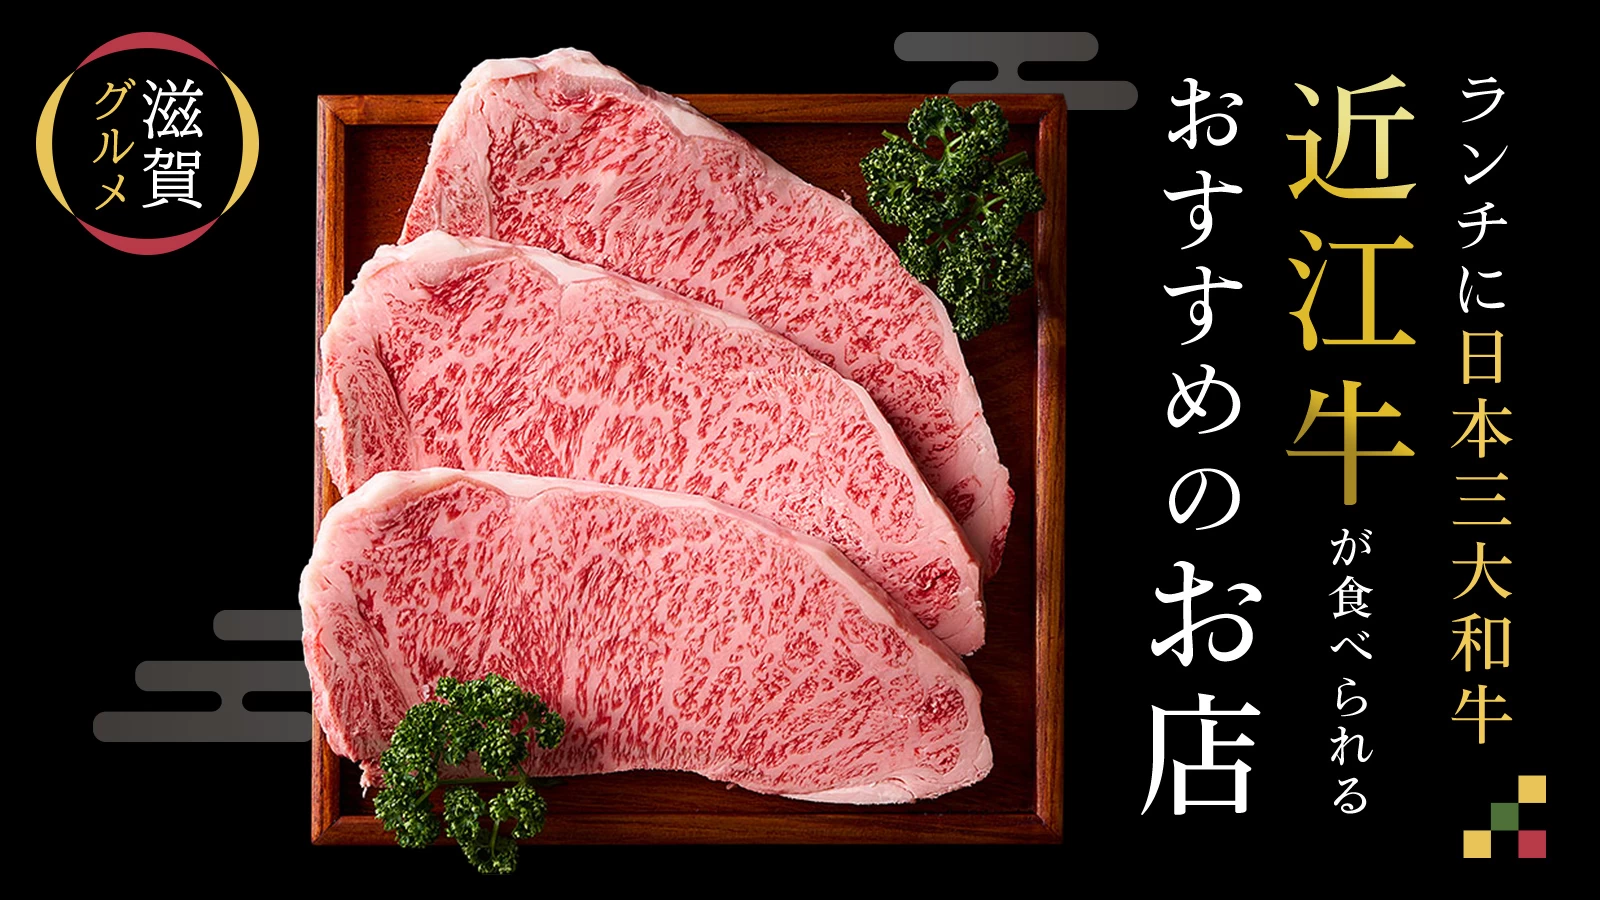 【滋賀グルメ】ランチに日本三大和牛"近江牛"が食べられるおすすめのお店6選